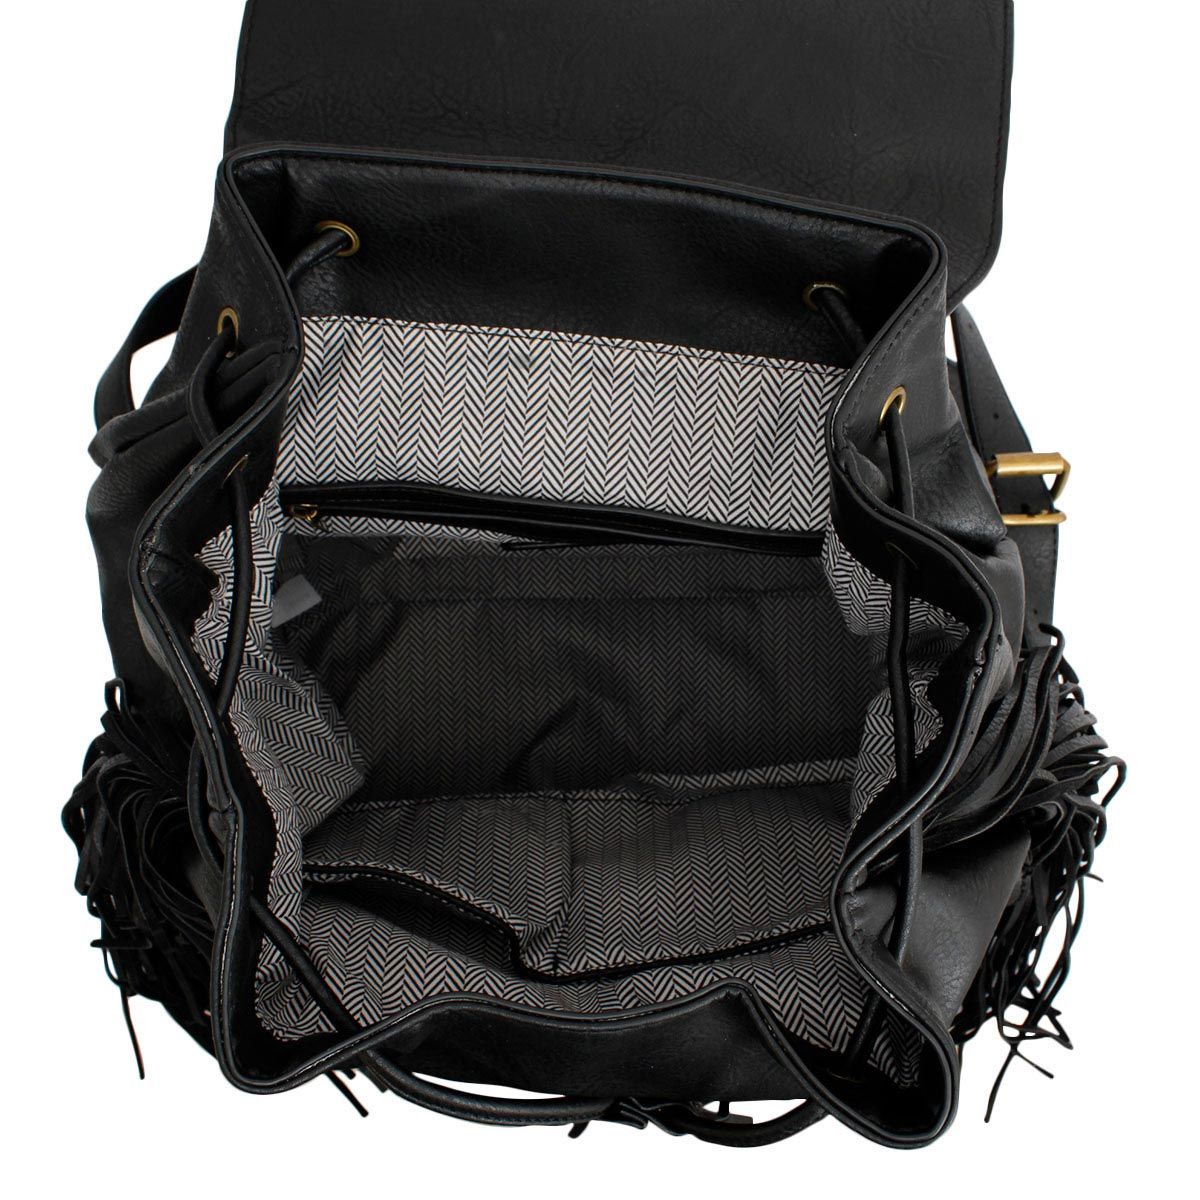 Backpack Black Leather Fringe Bag for Women